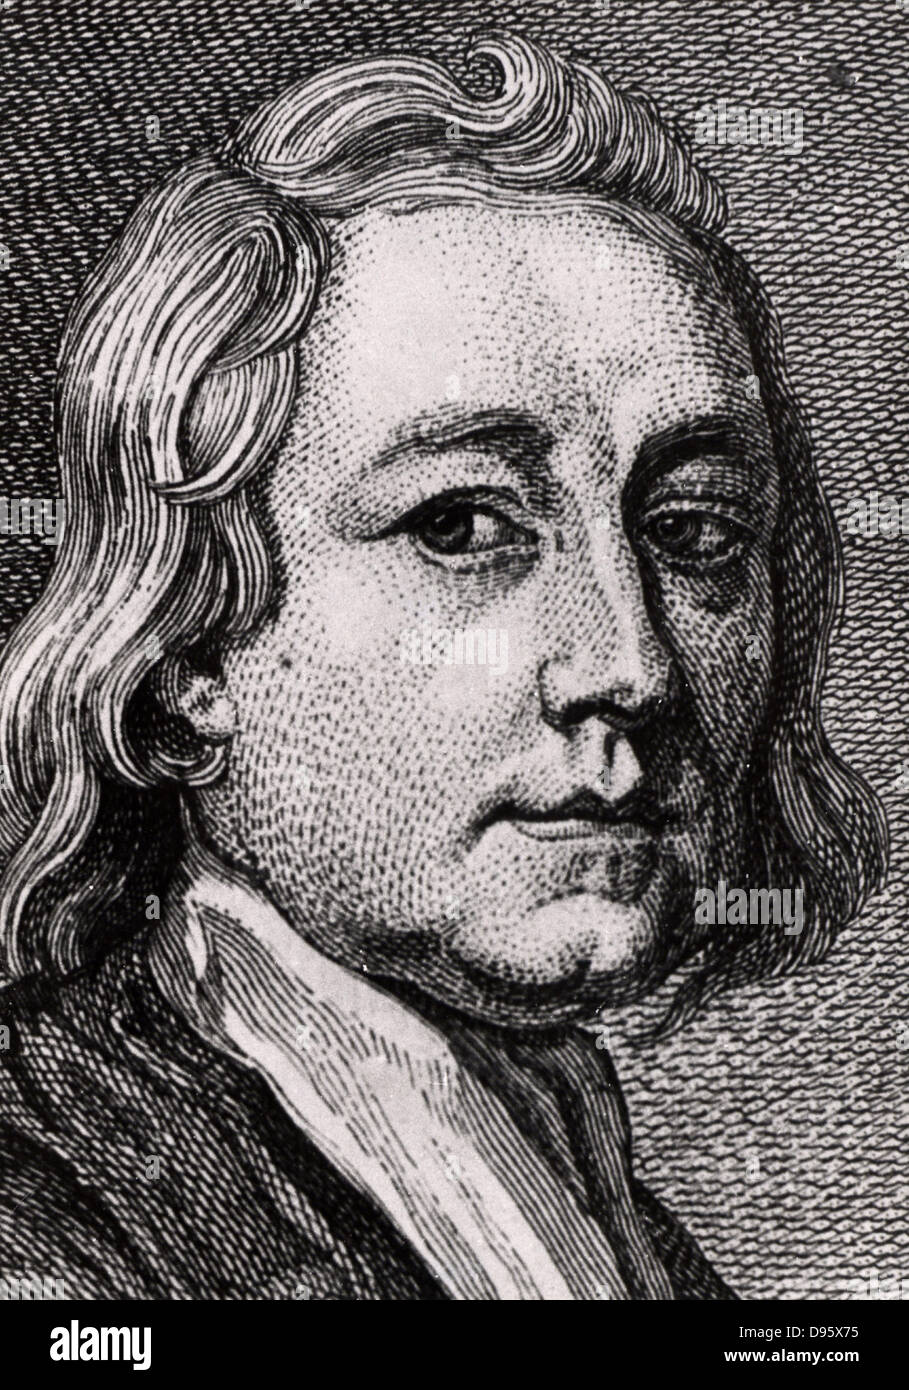 Thomas Burnett (1635-1715), englischer Theologe und Schriftsteller auf  Kosmogonie, im Croft in der Nähe von Darlington, County Durham, England  geboren. Seine Ideen zur Entstehung und Aufbau der Erde waren spekulative  und unwissenschaftlich.